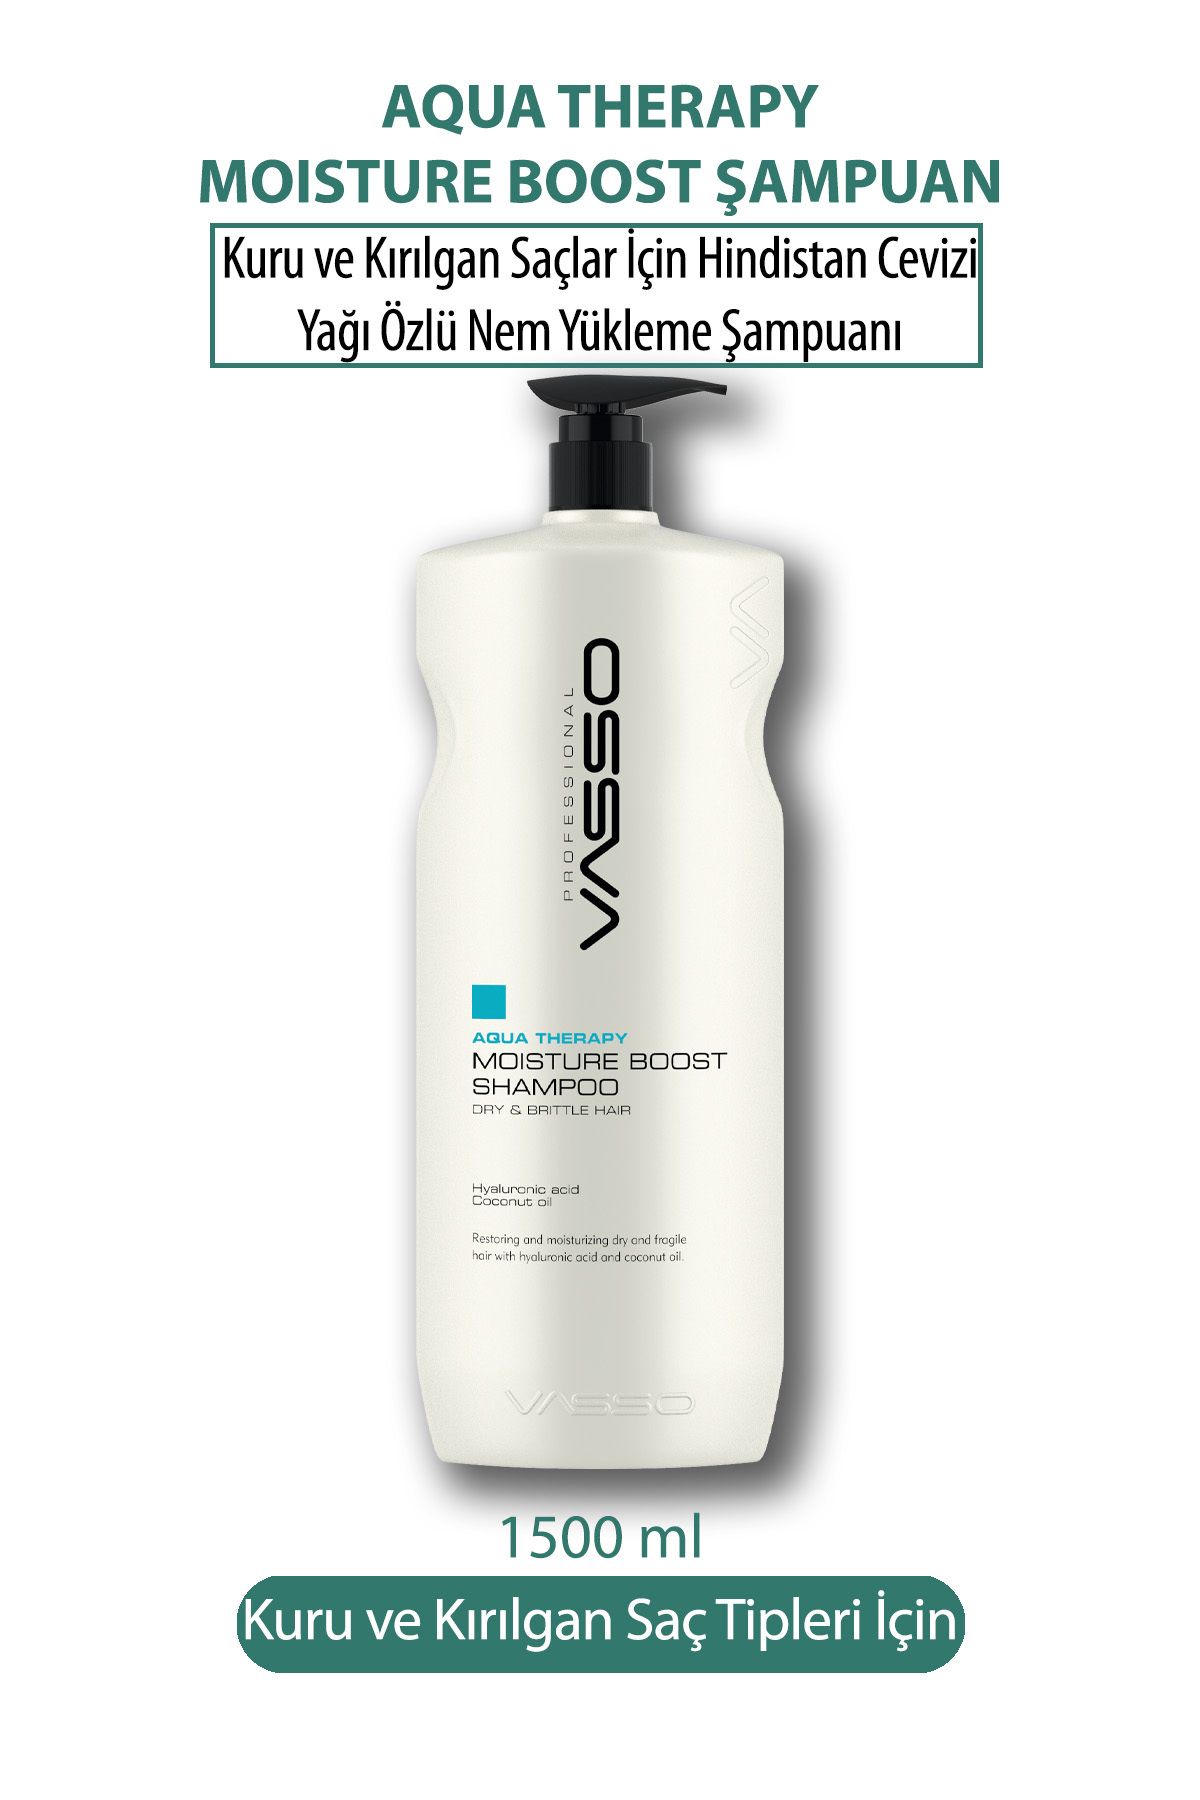 VASSO WOMEN Kuru Ve Kırılgan Saçlar Için Hindistan Cevizi Yağı Özlü Nem Yükleme Şampuanı -vasso Aqua 1500 ml